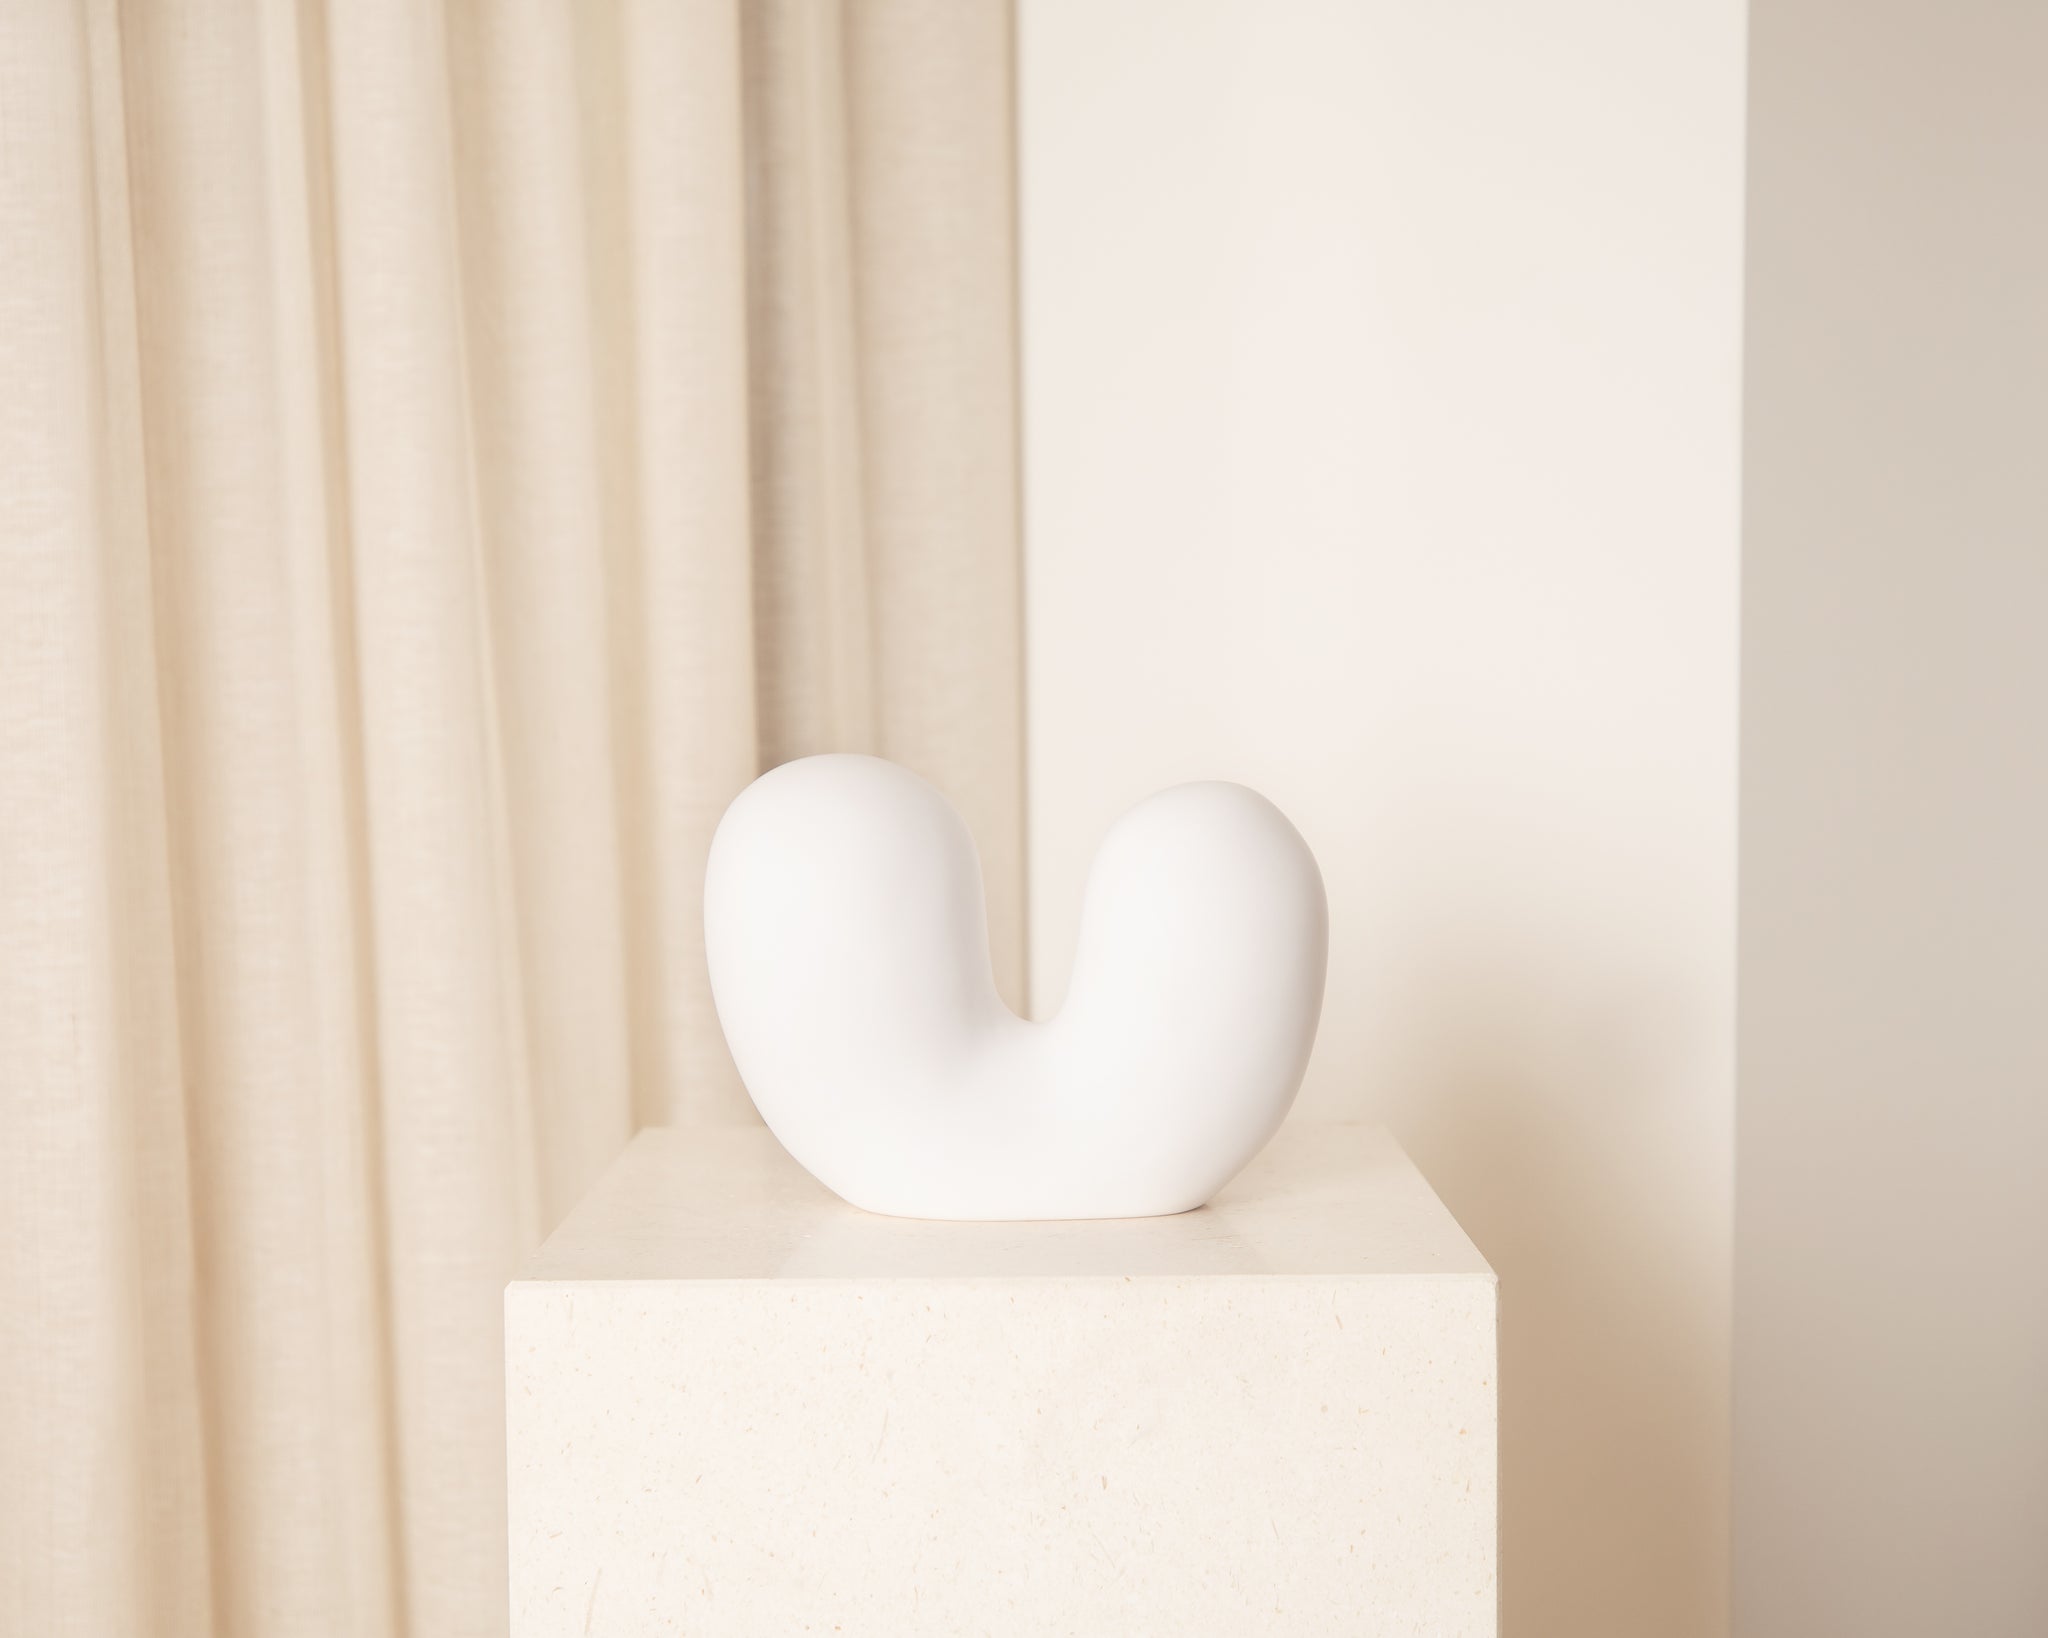 Macaroni Sculpture by Tina Frey